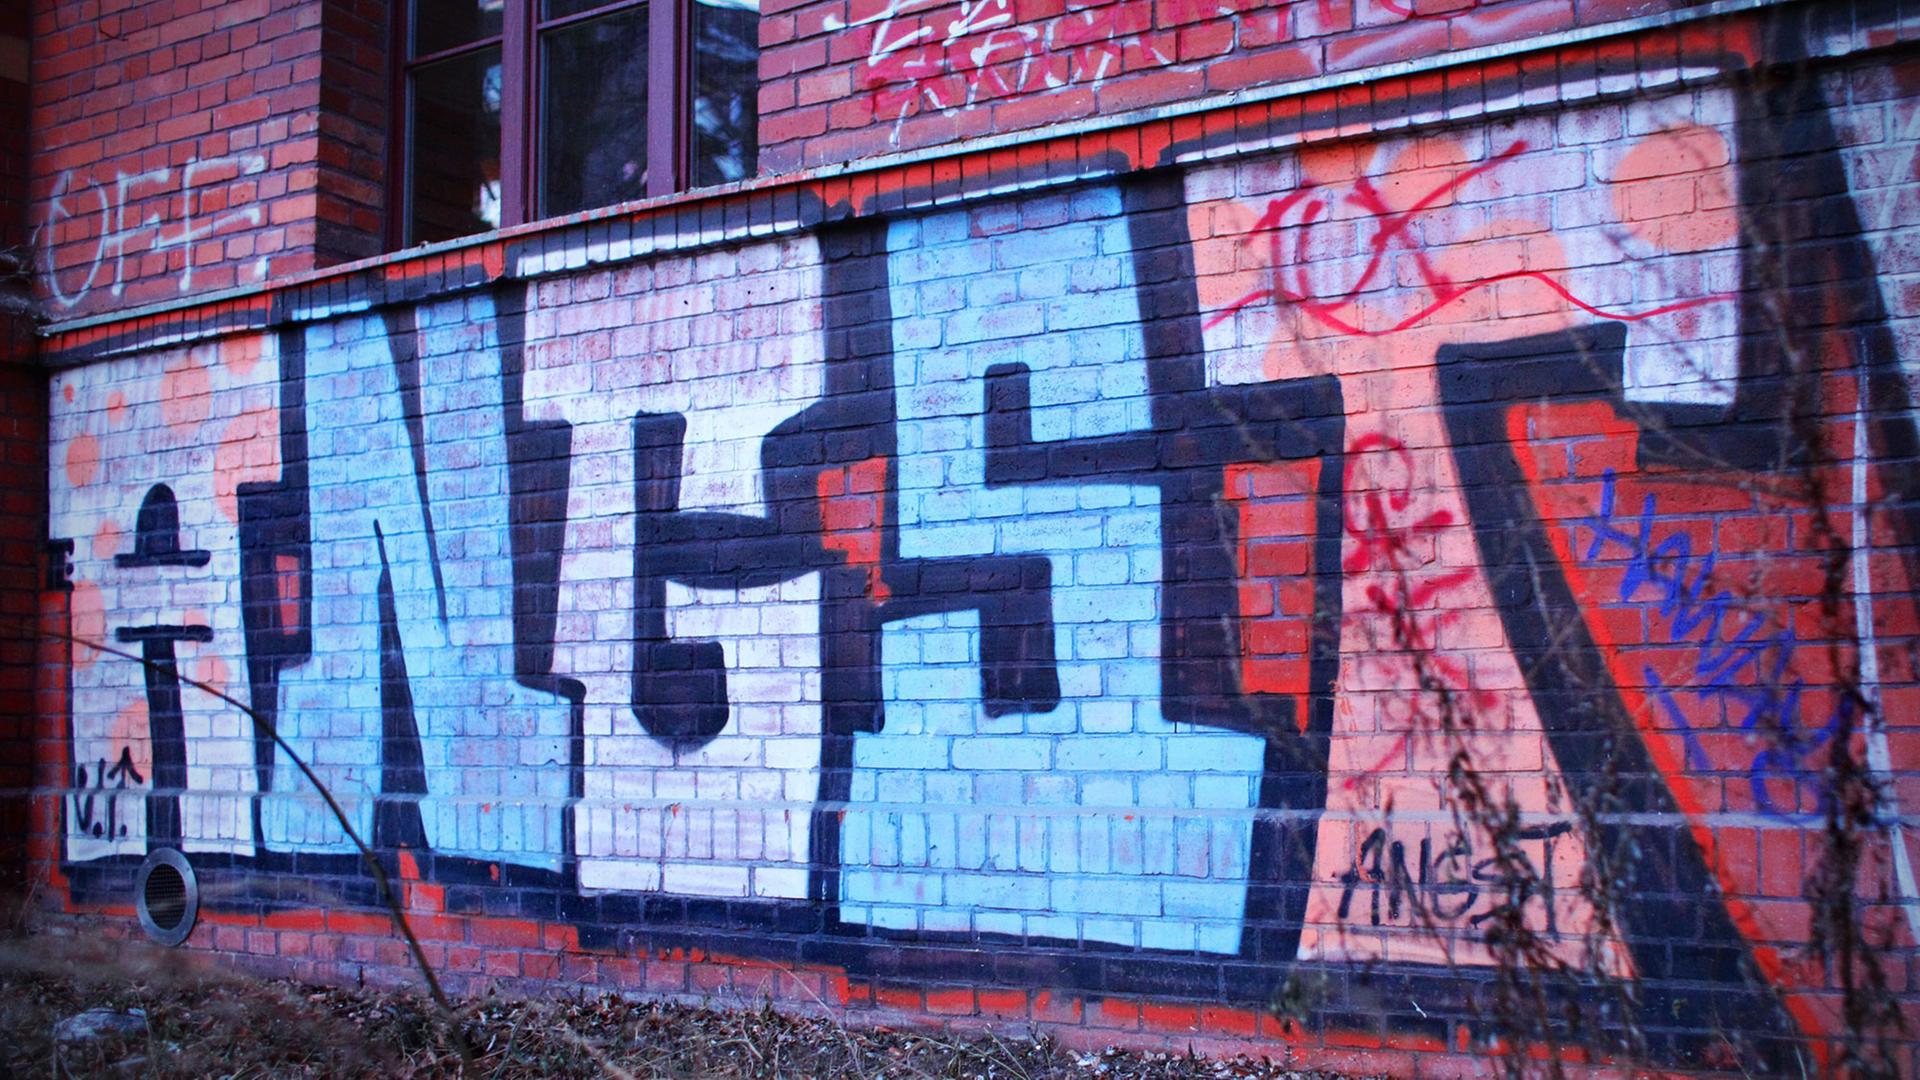 Ein Graffiti mit dem Wort "Angst" auf einer Backsteinwand eines Hauses